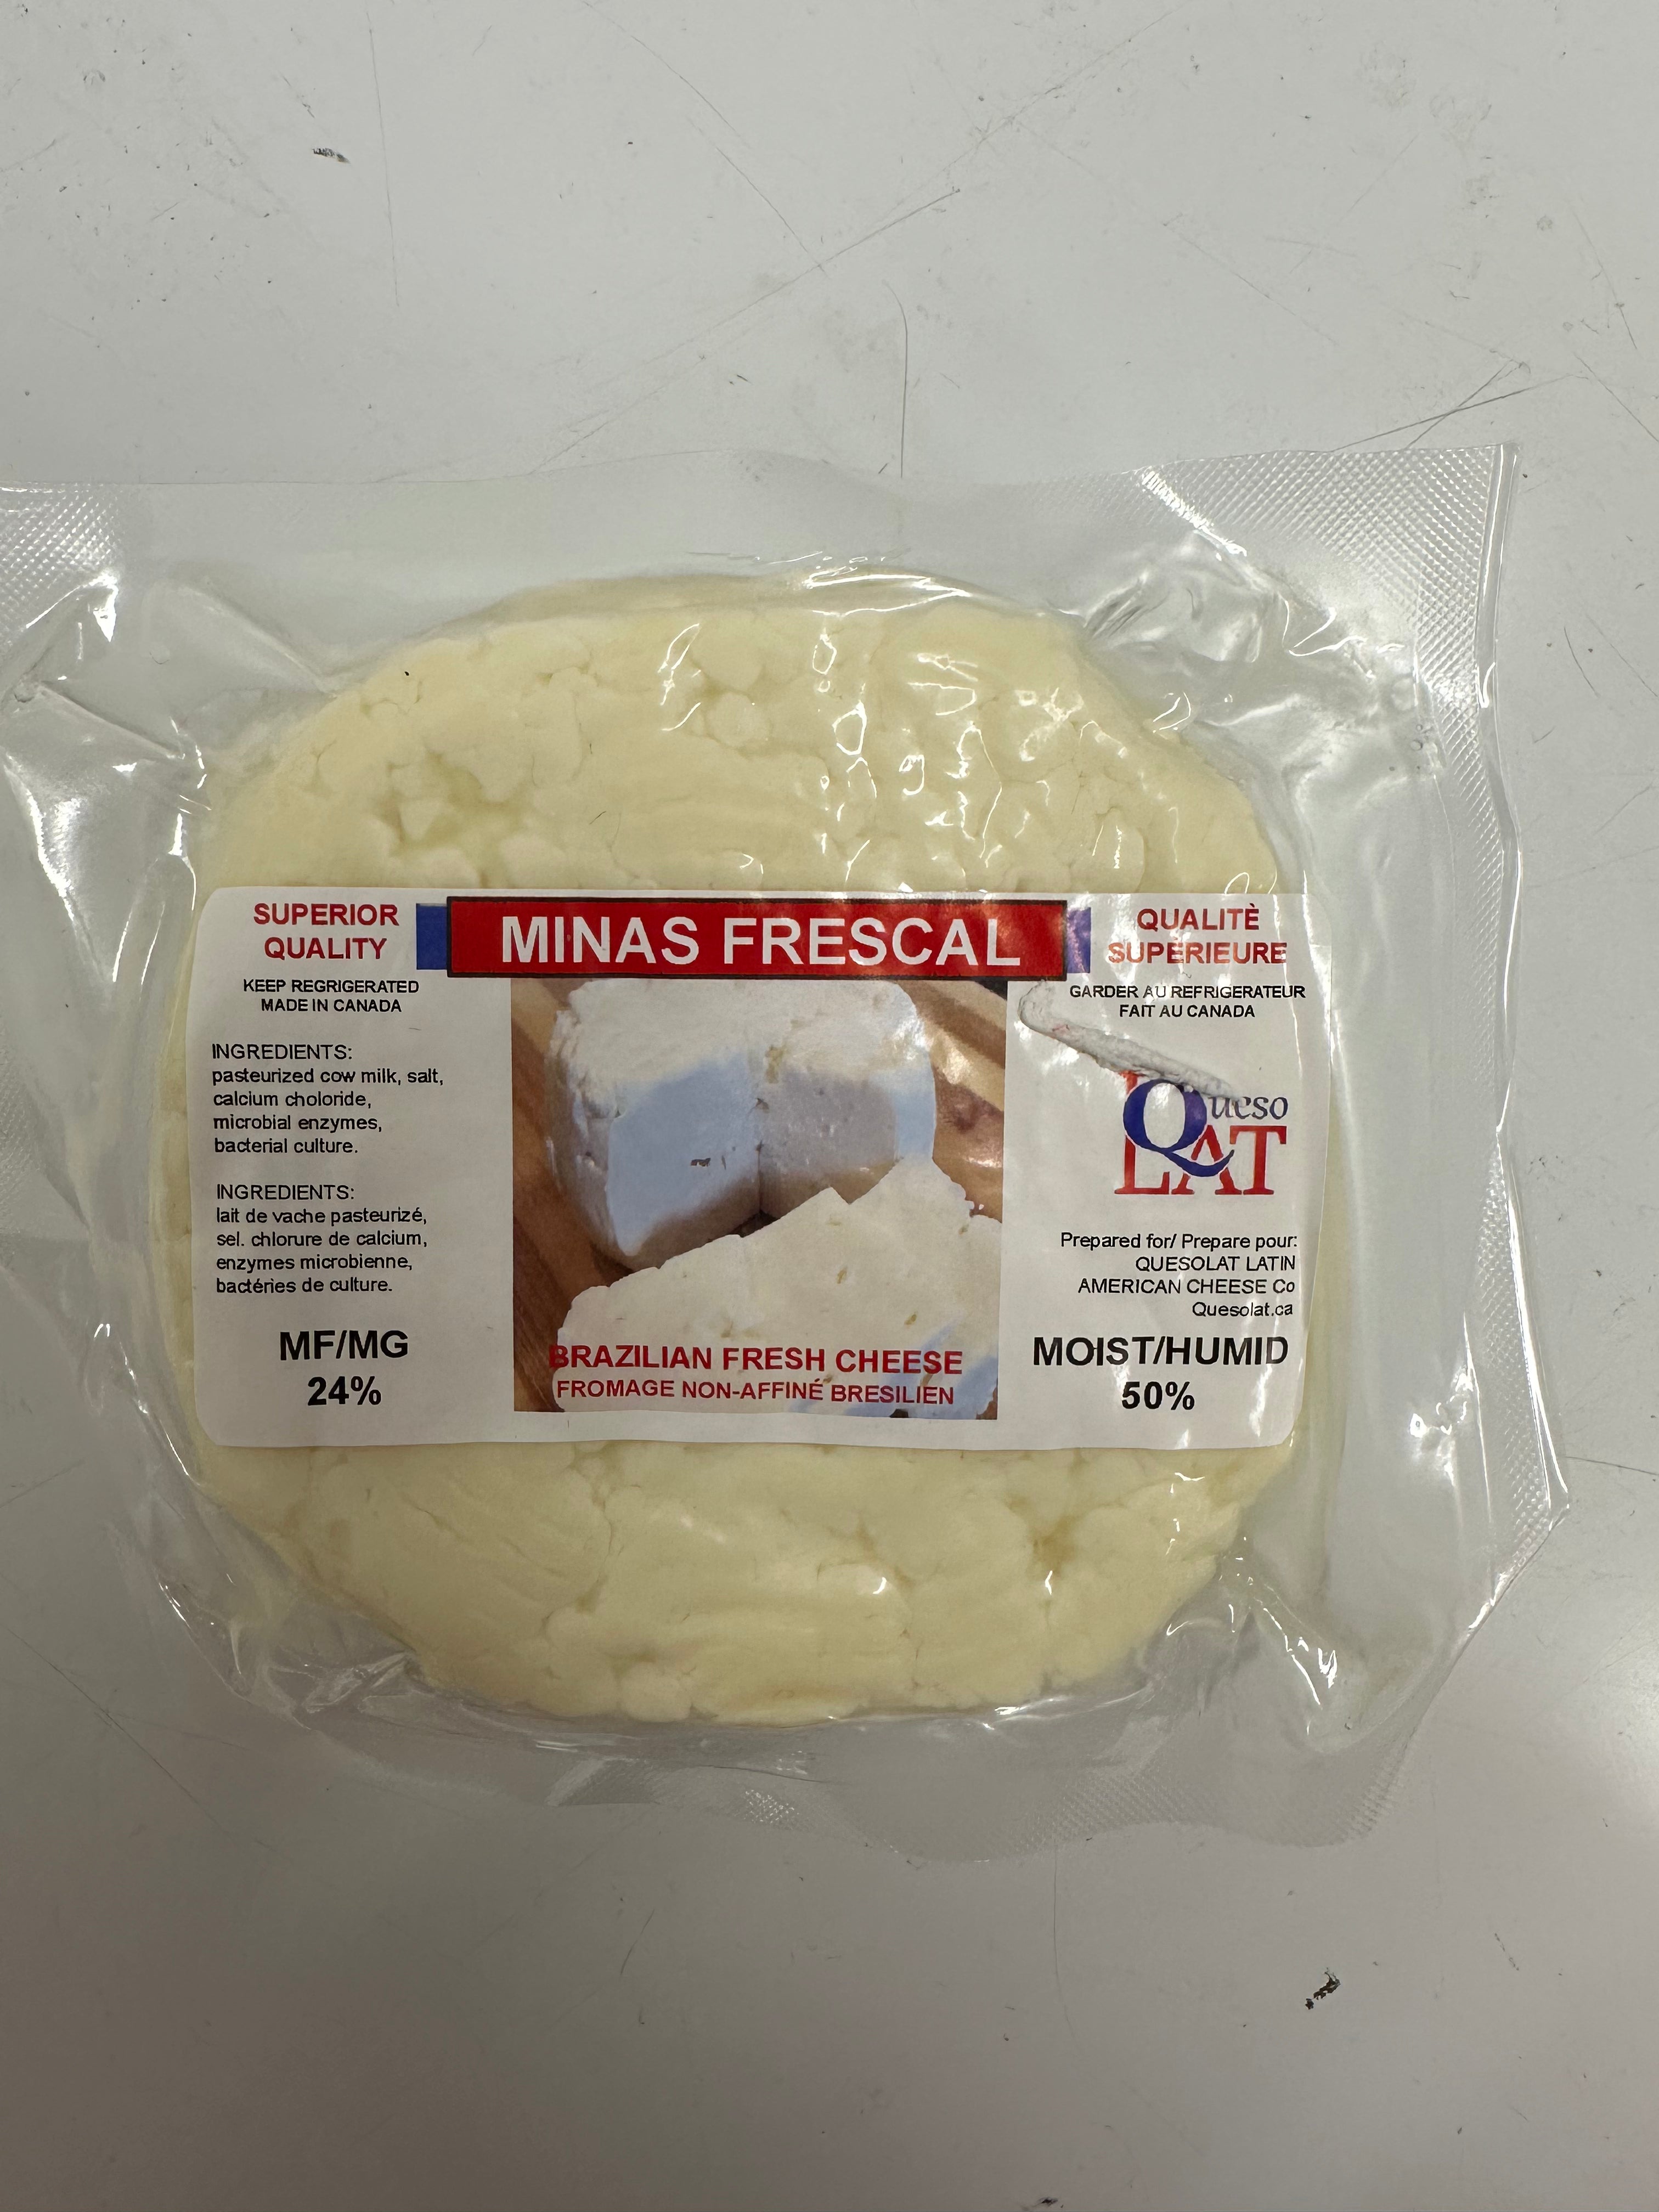 QUESOLAT - Minas Frescal Cheese - 400g